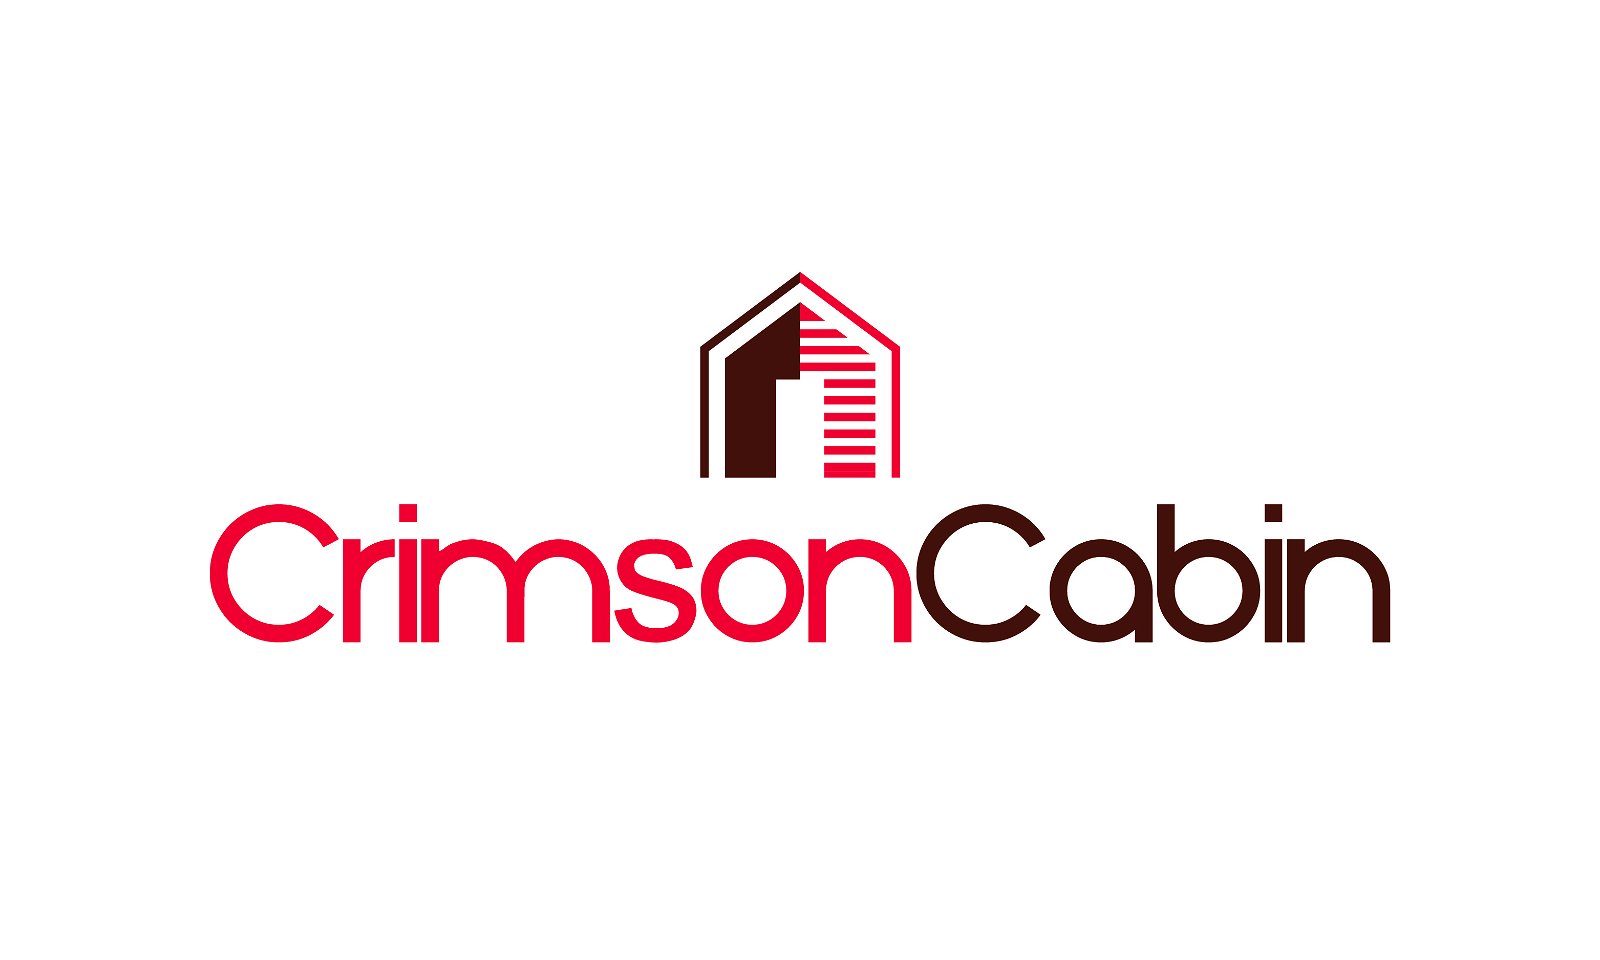 CrimsonCabin.com - Creative brandable domain for sale